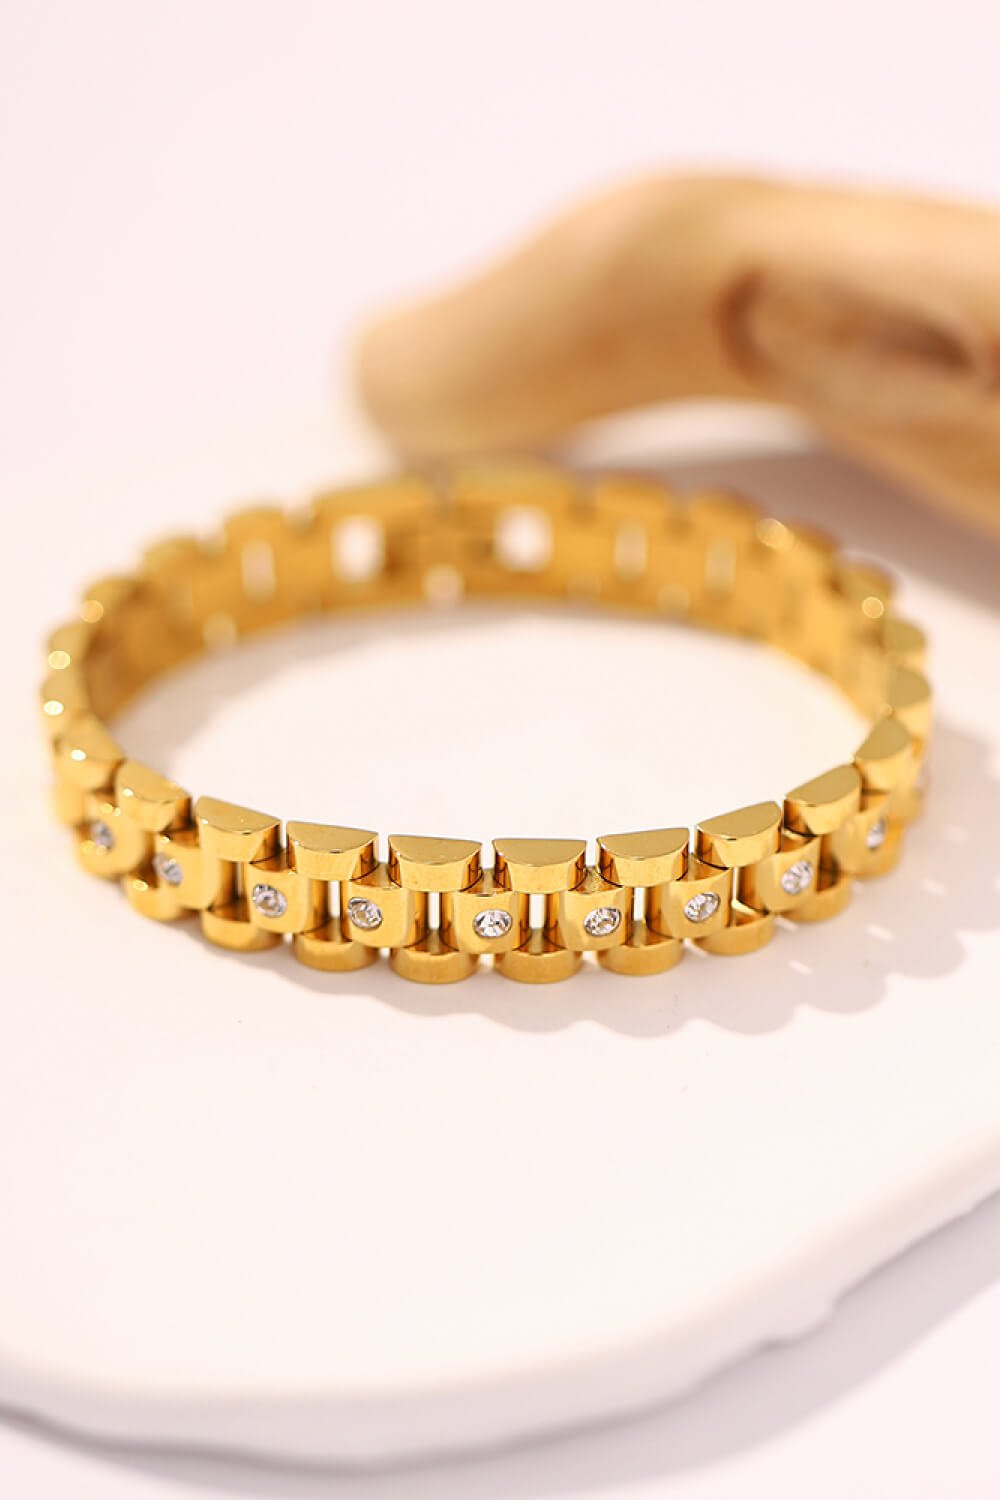 18K Gold-Plated Watch Band Bracelet - EMMY